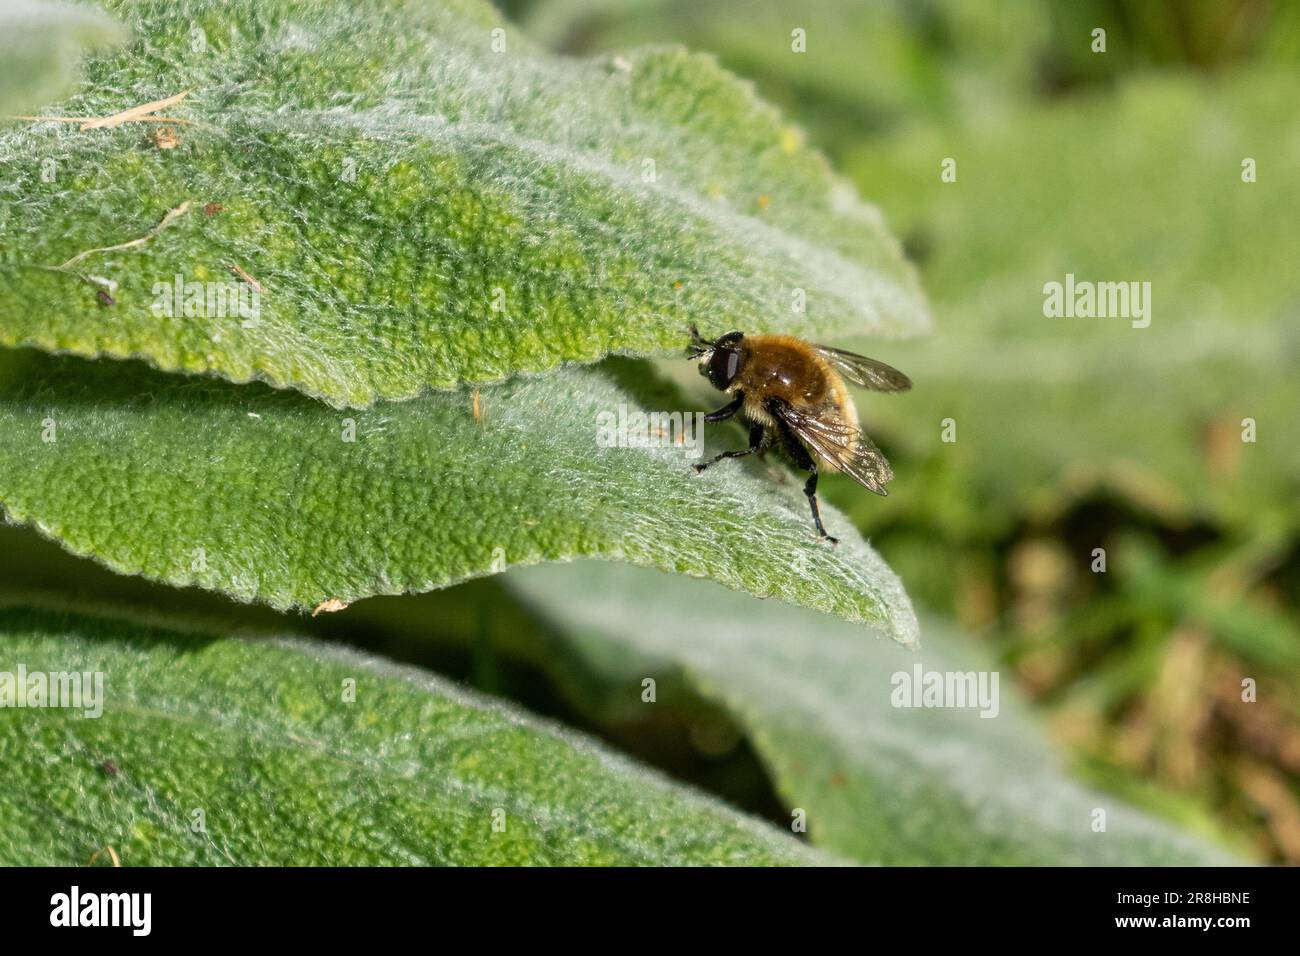 Une seule abeille menuisier mâle se nourrissant sur les feuilles douces d'une plante d'oreille d'agneaux.(Stachys byzantina). Banque D'Images